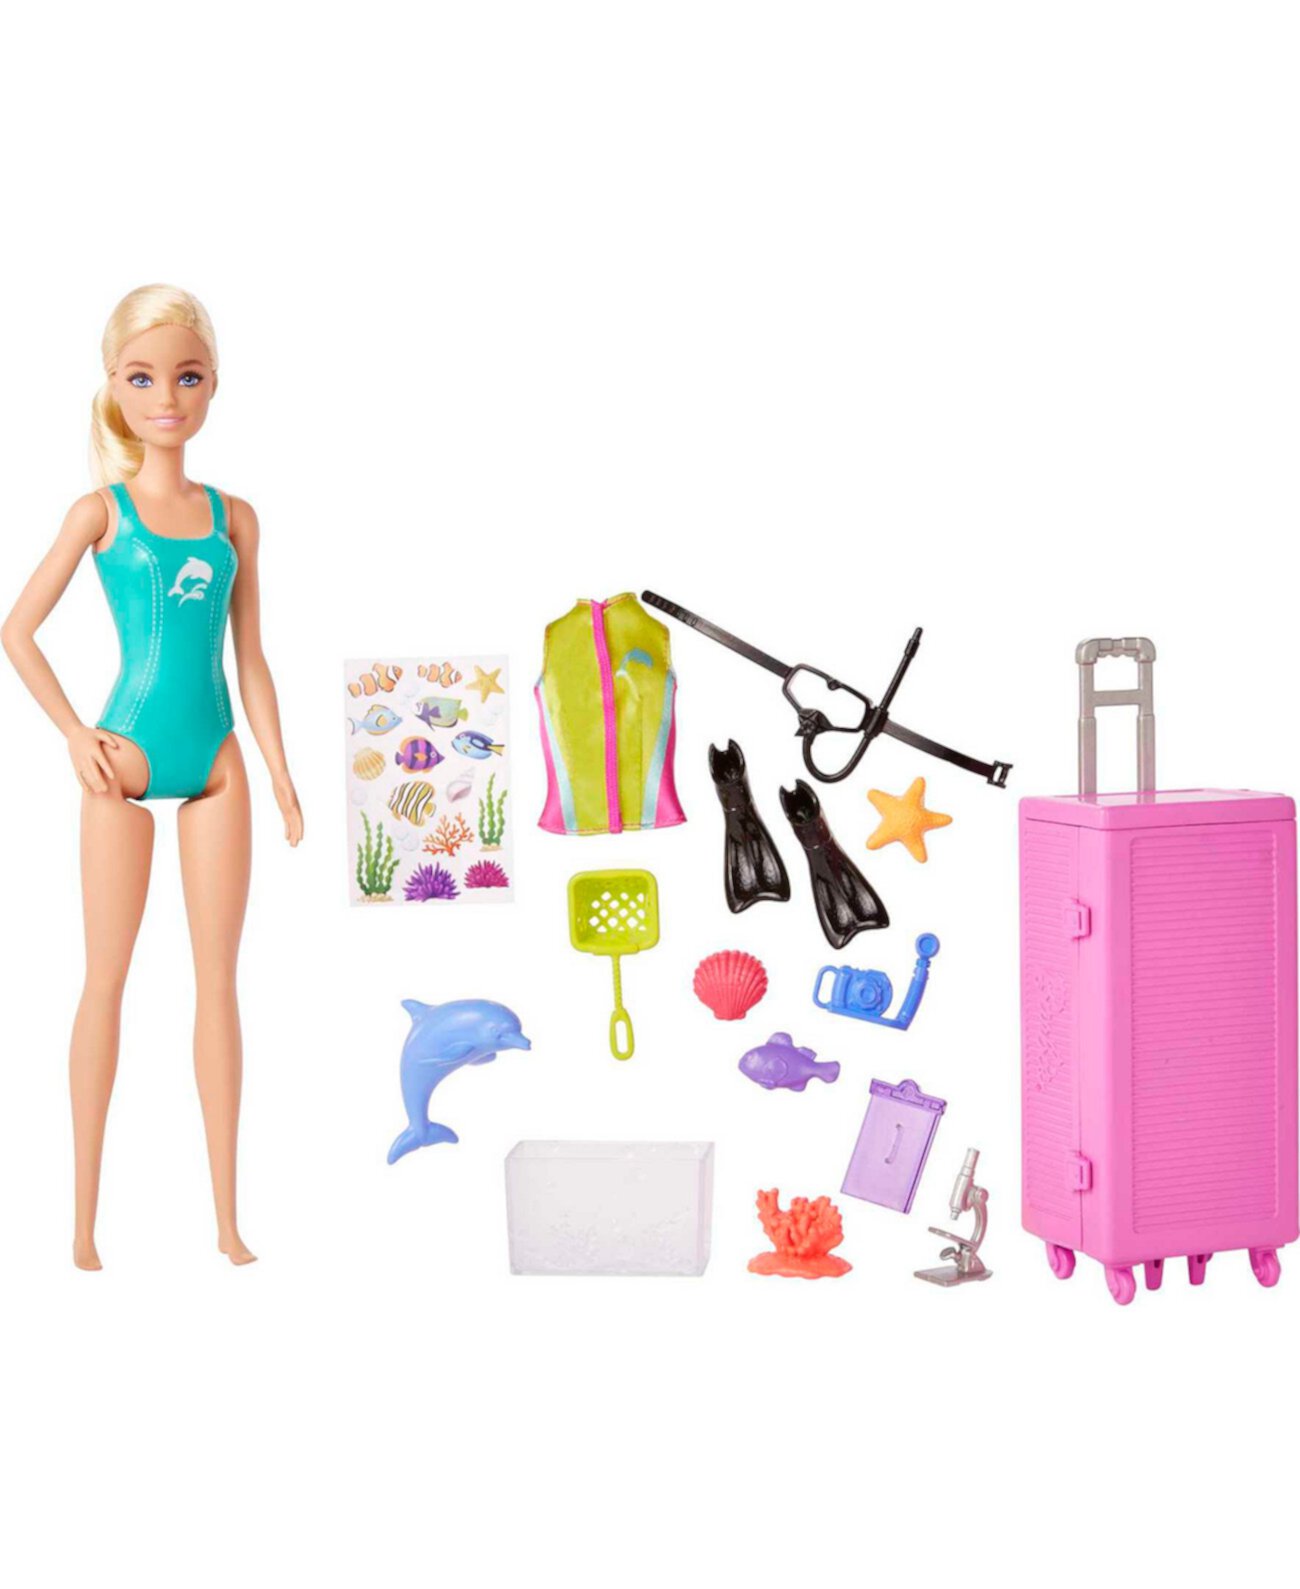 Кукла и игровой набор «Морской биолог» — блондинка Barbie